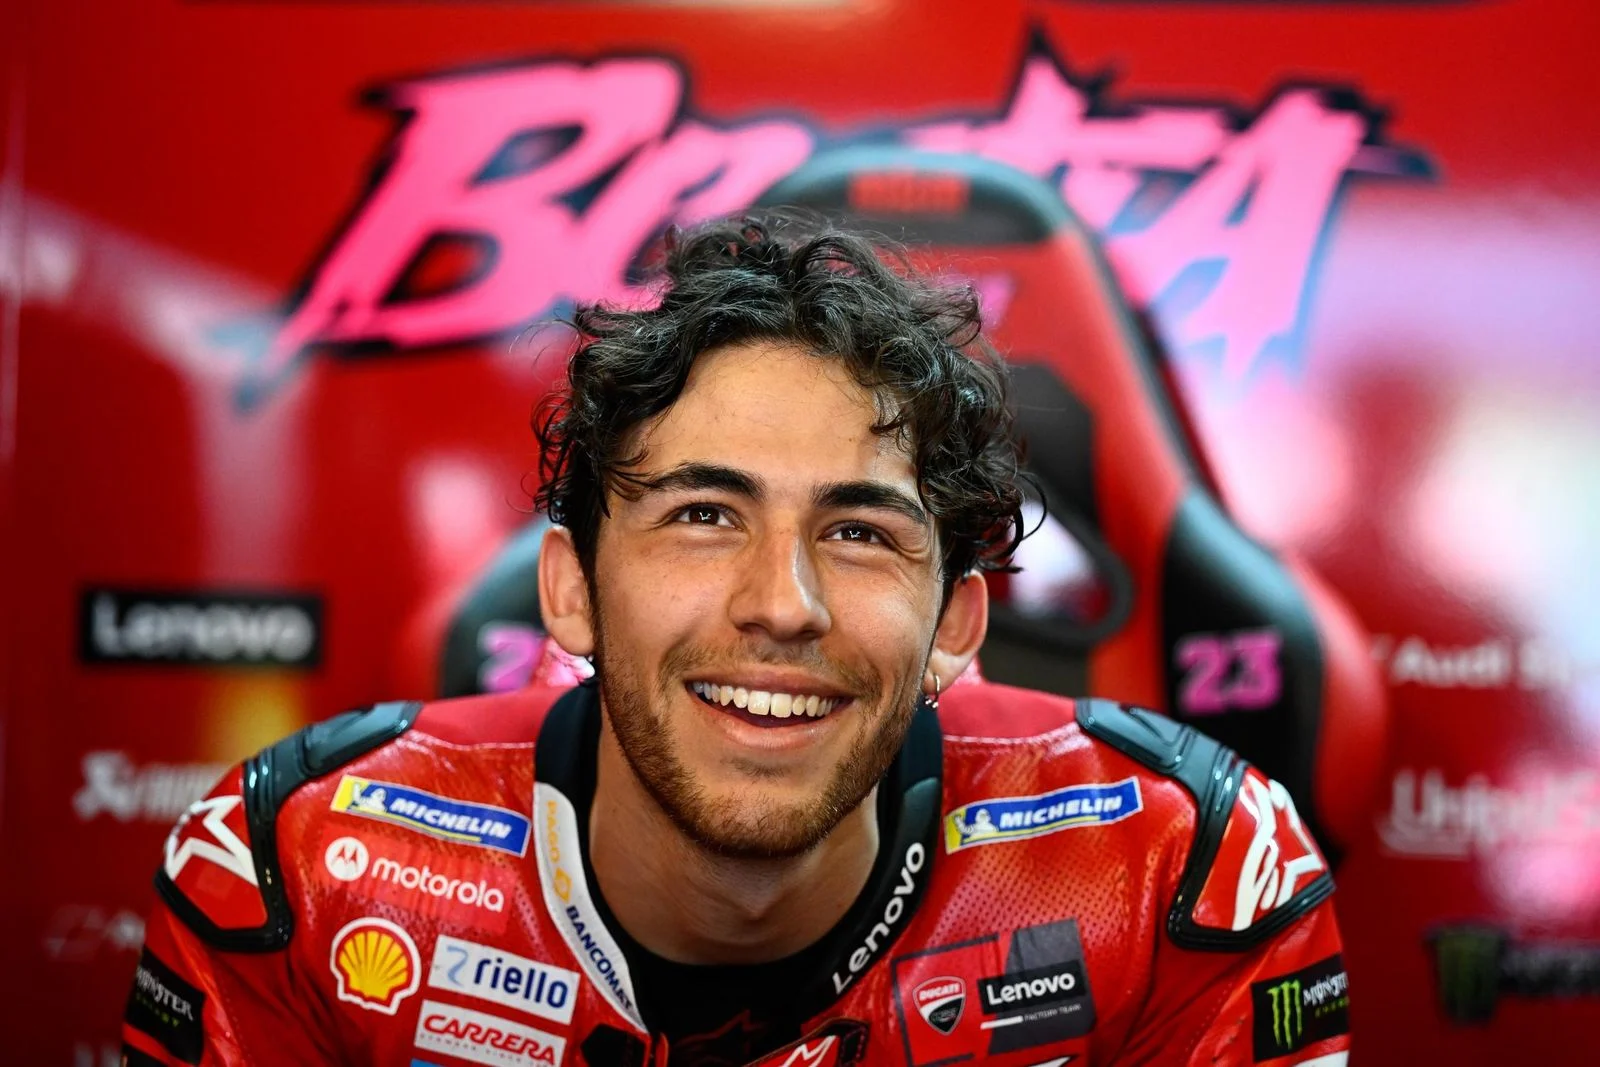 Bastianini Raises Concerns Over Potential Exit from Ducati MotoGP Squad